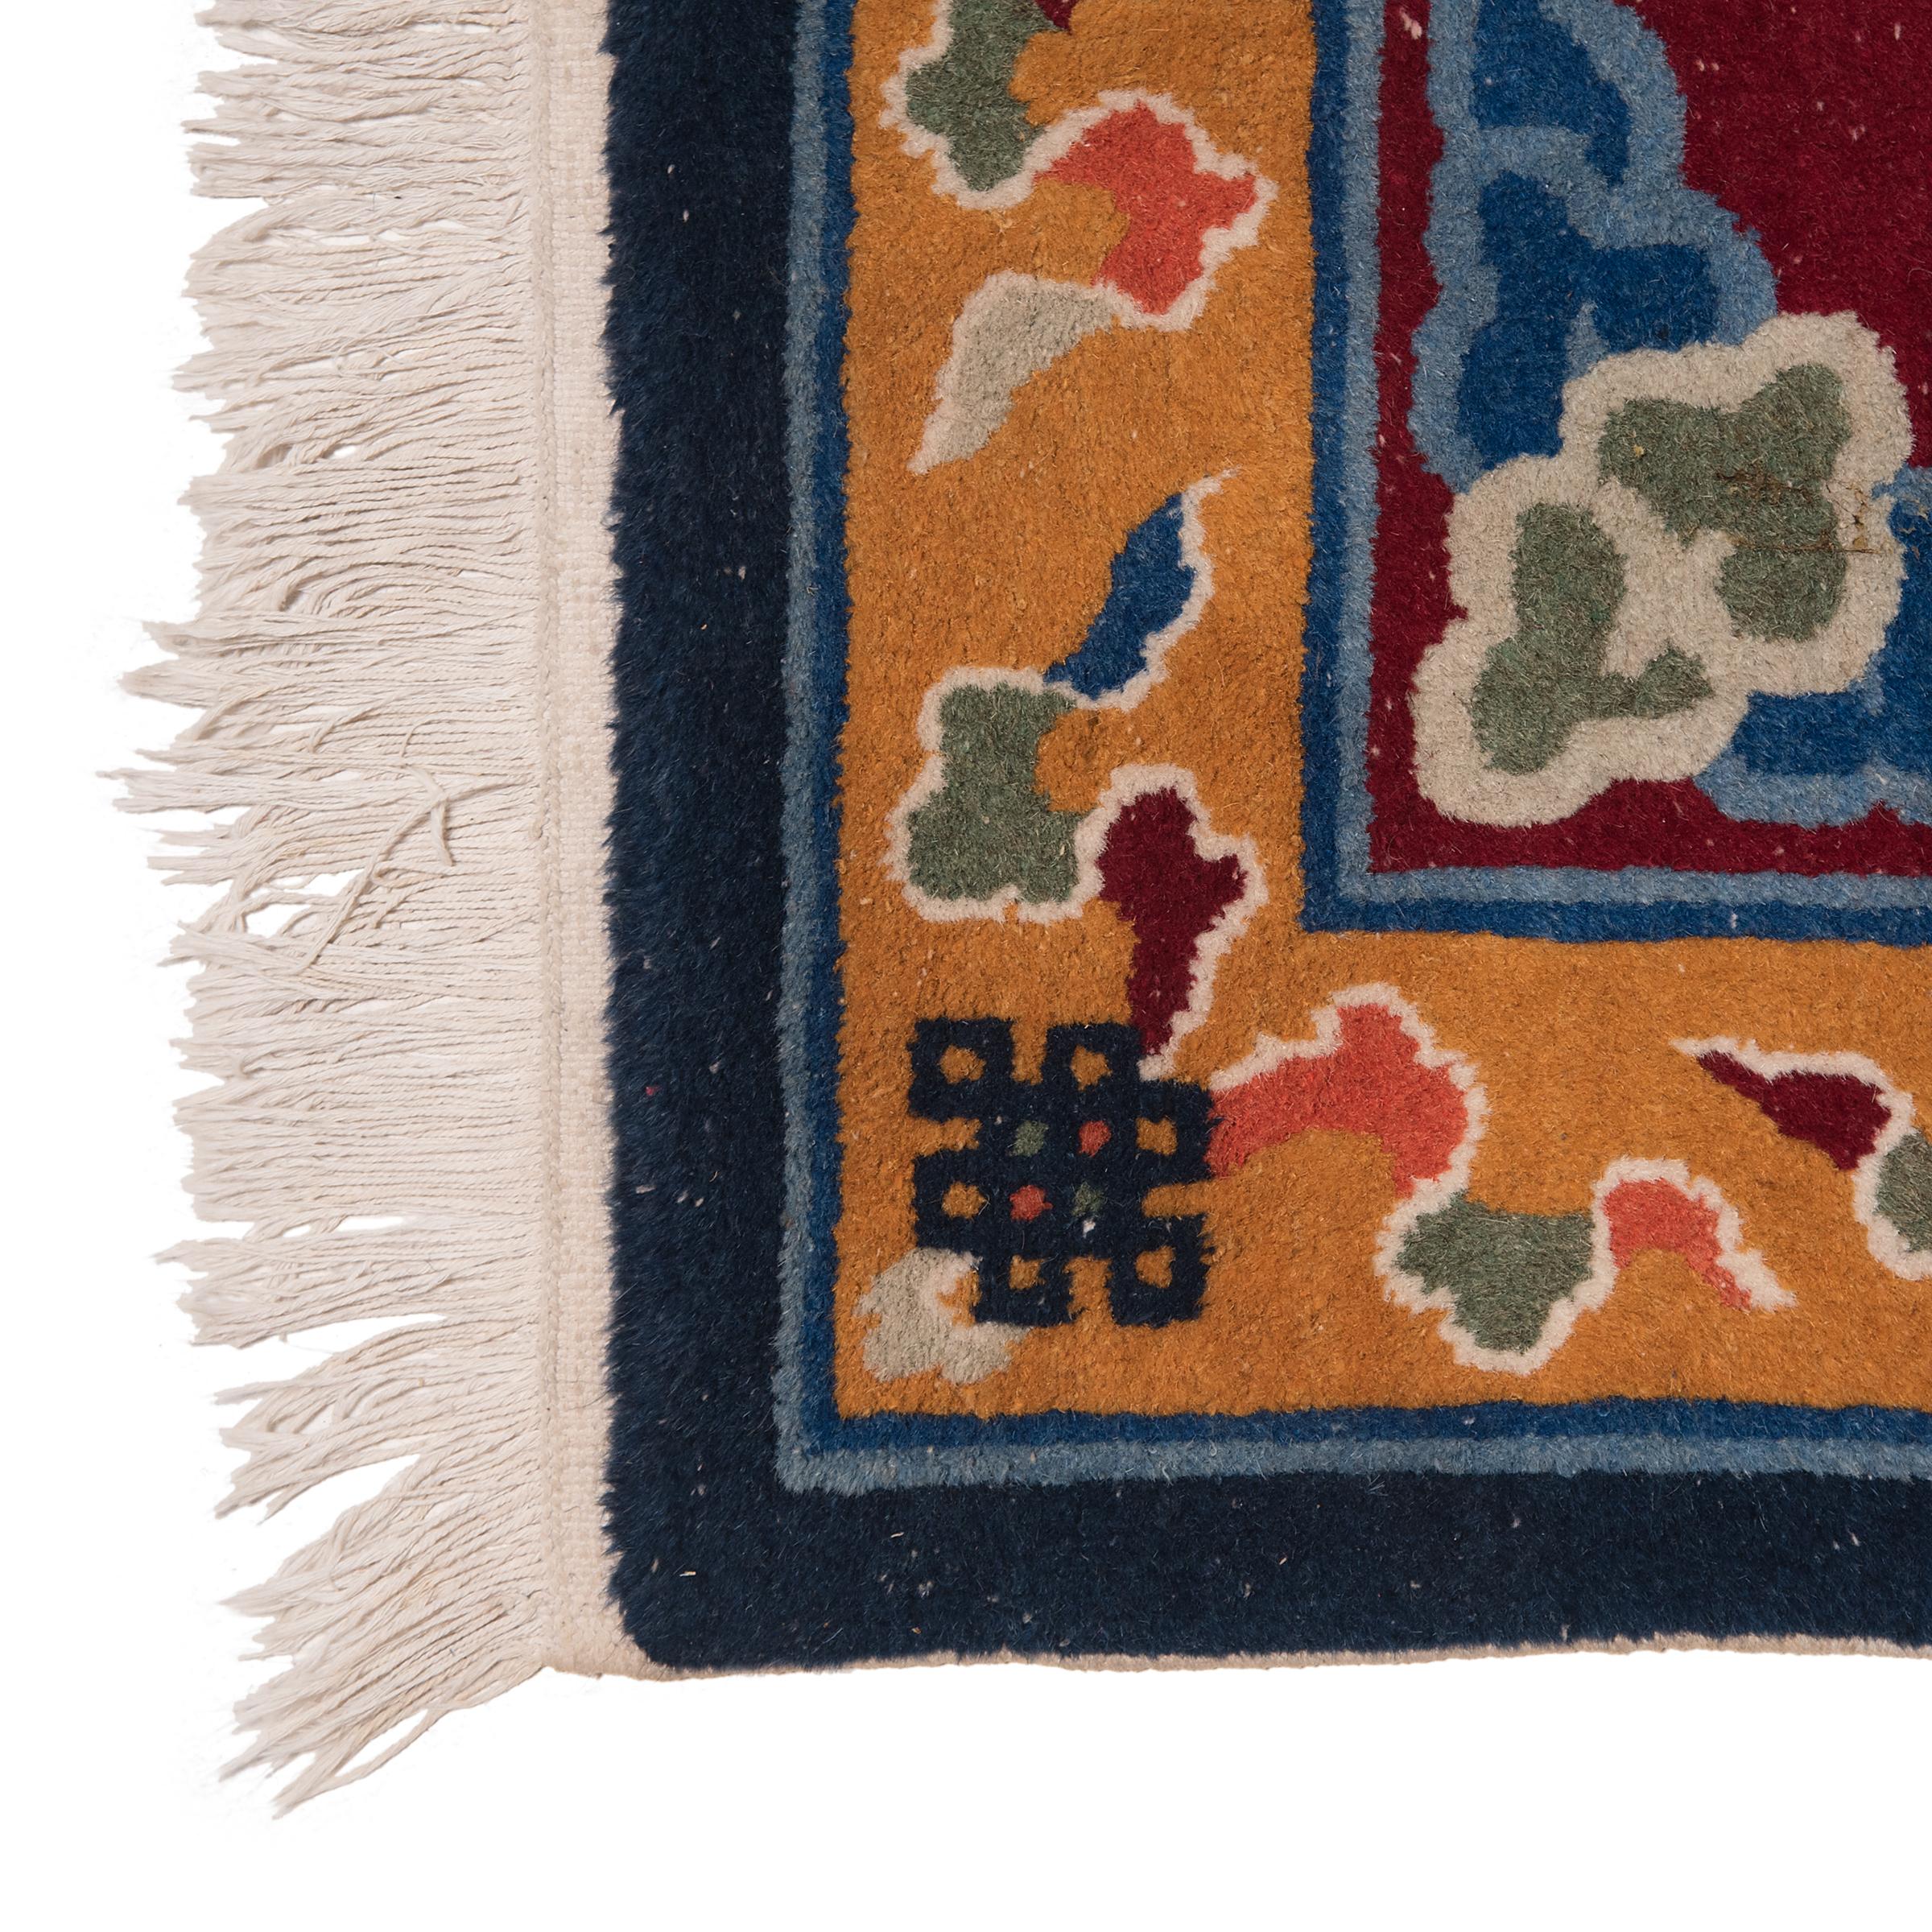 Ce petit tapis rectangulaire recrée les motifs traditionnels des tapis chinois avec une palette de couleurs audacieuse composée de marron, de bleu marine et de jaune moutarde. Sur le fond rouge vin se détache un médaillon central représentant un